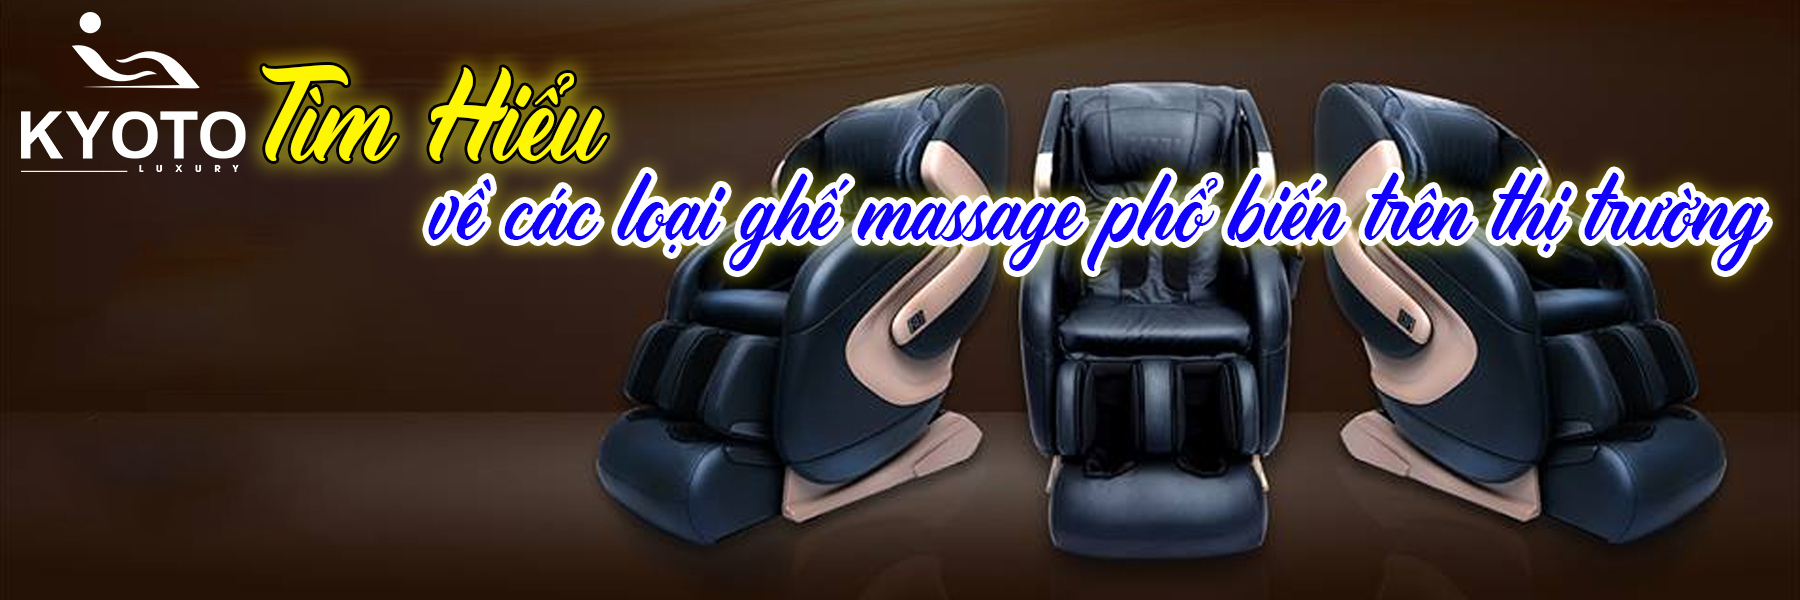 Tìm hiểu về các loại ghế massage phổ biến trên thị trường